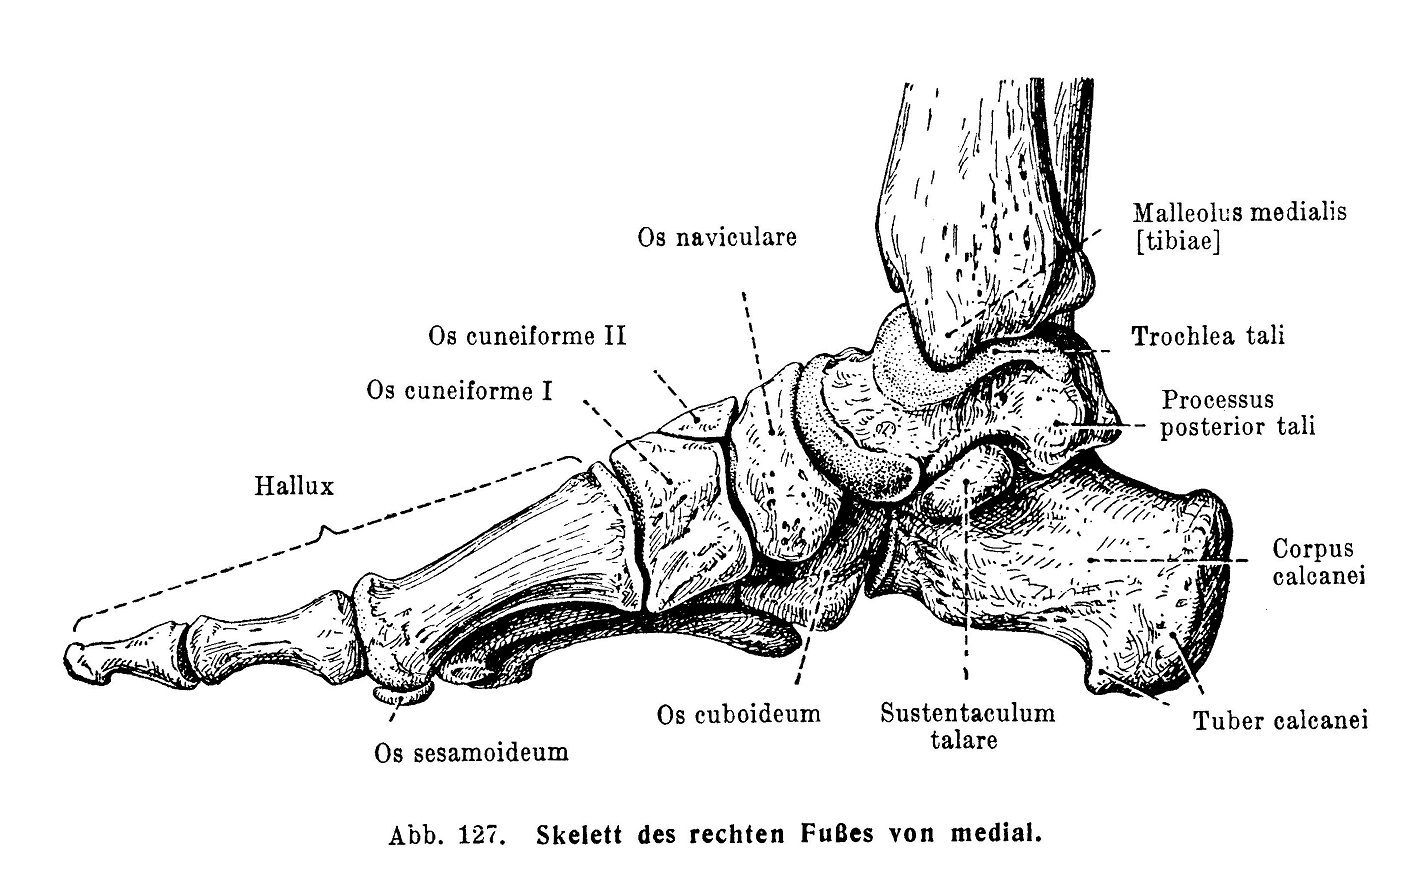 Skelett des rechten Fußes von medial